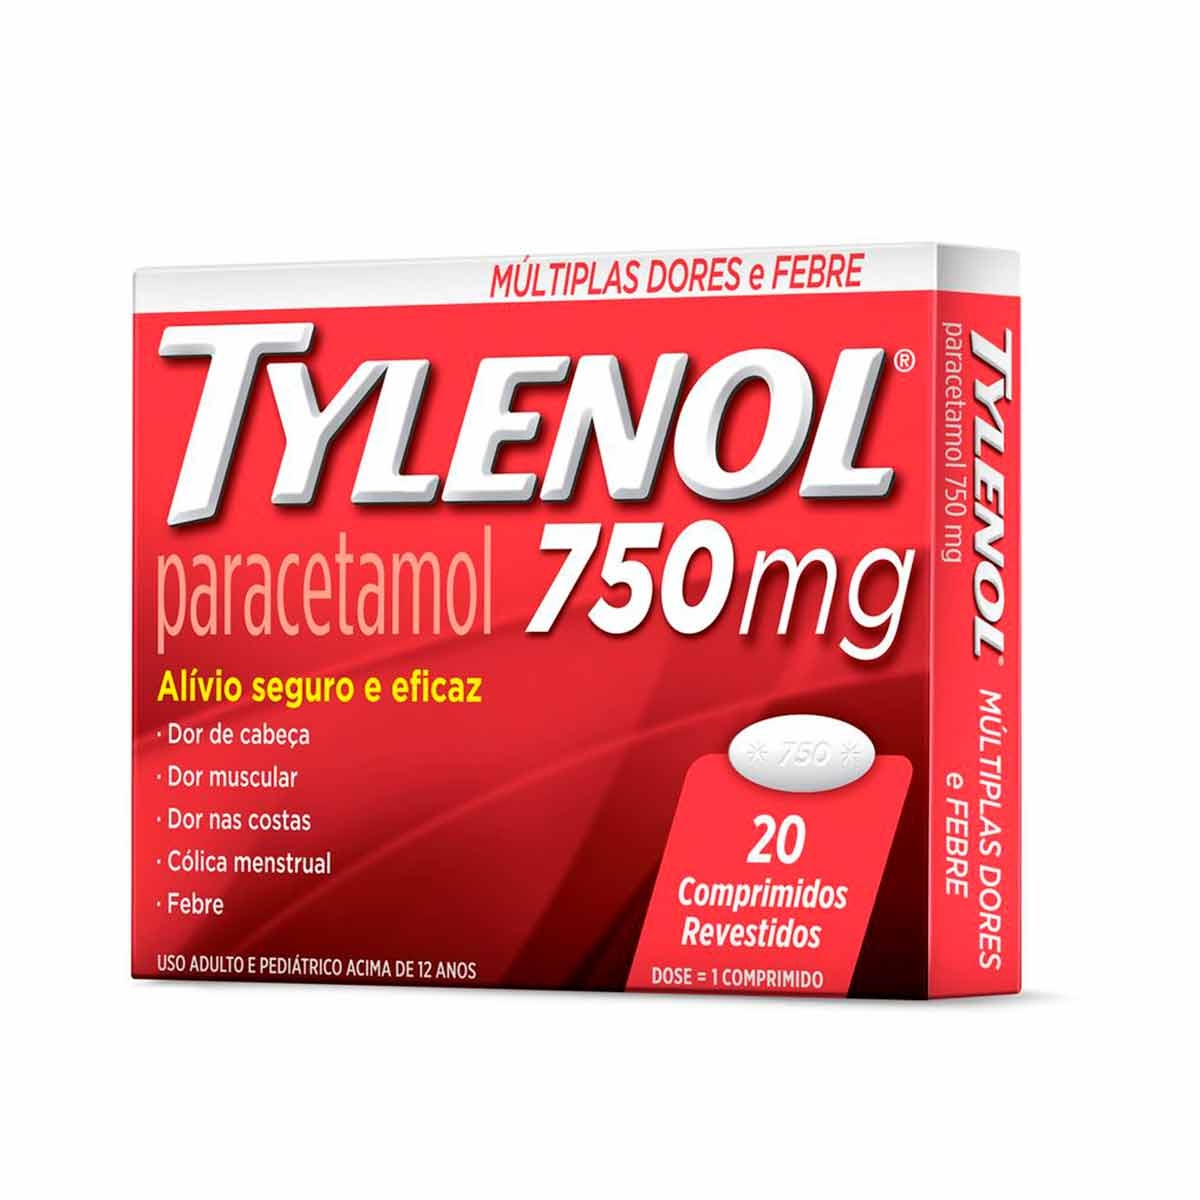 Frecuencia de tomar Paracetamol 1g